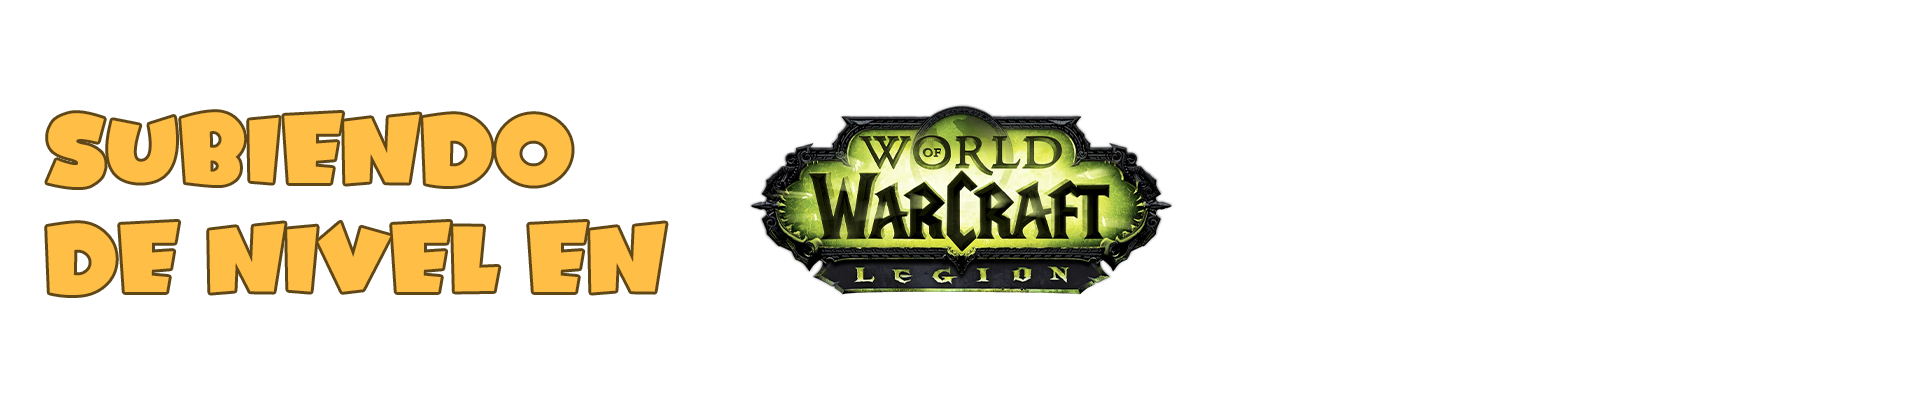 Subiendo de Nivel en World of Warcraft Legion